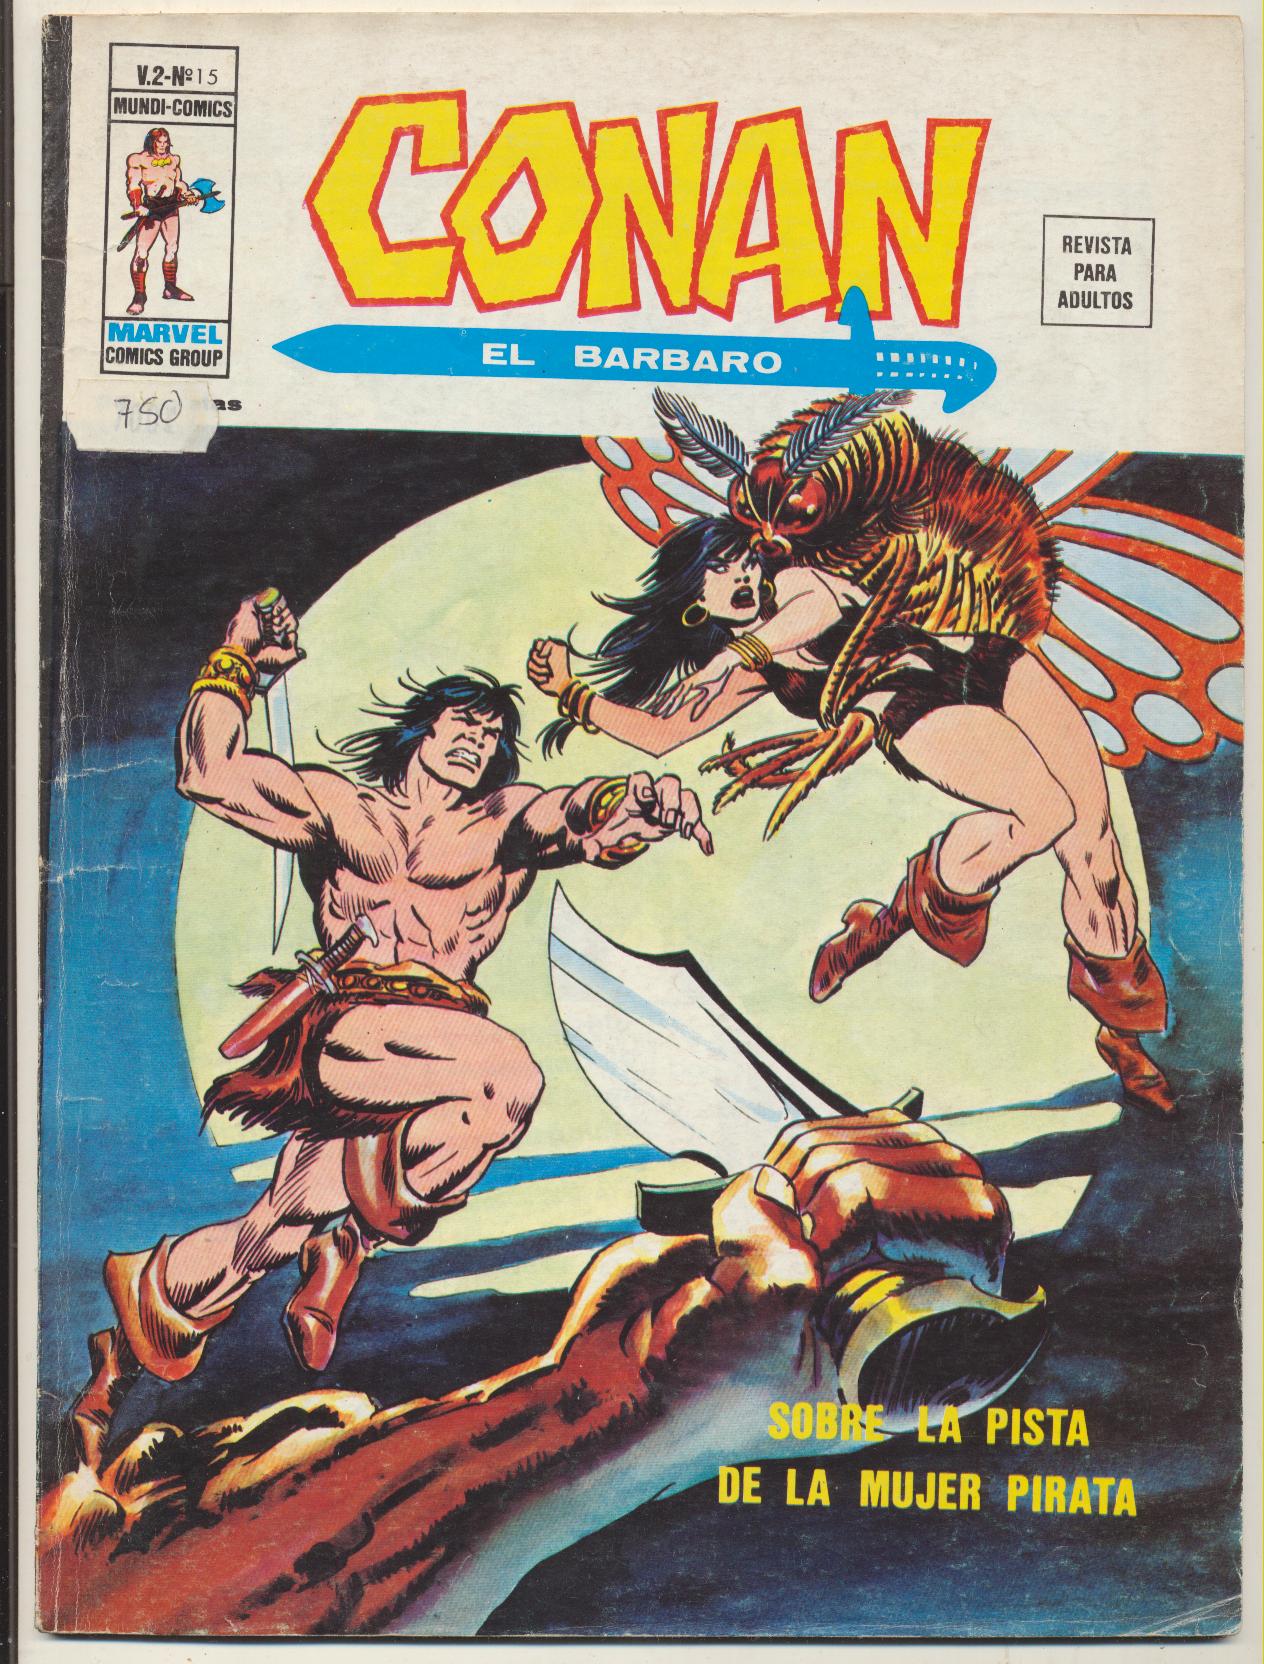 Conan El Bárbaro v2. Vértice 1974. Nº 15